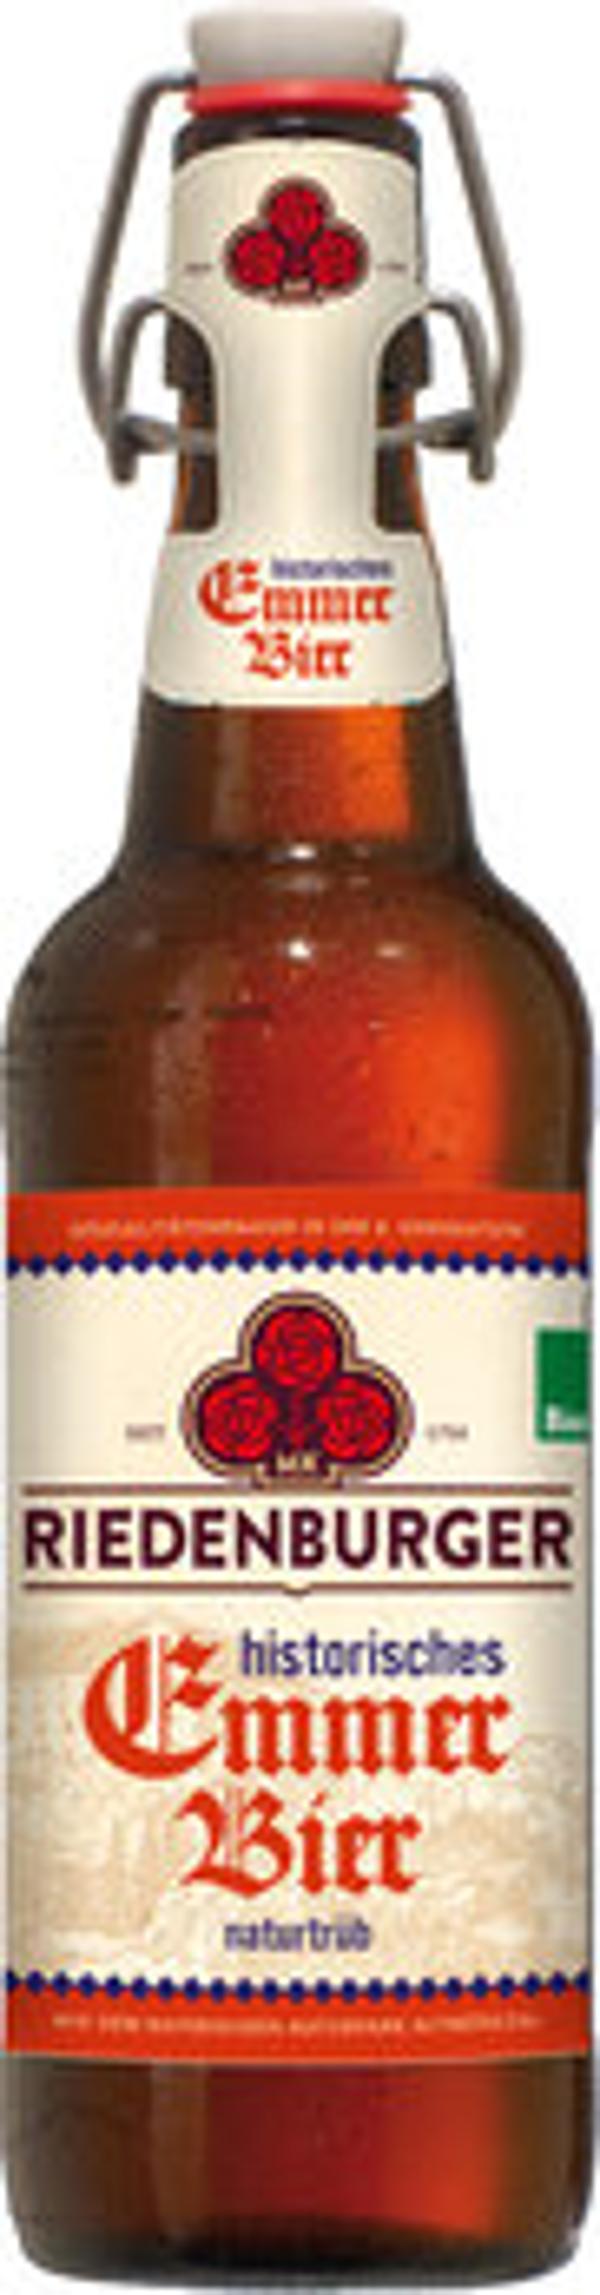 Produktfoto zu Emmer-Bier Riedenburger Kiste 20*0,5L